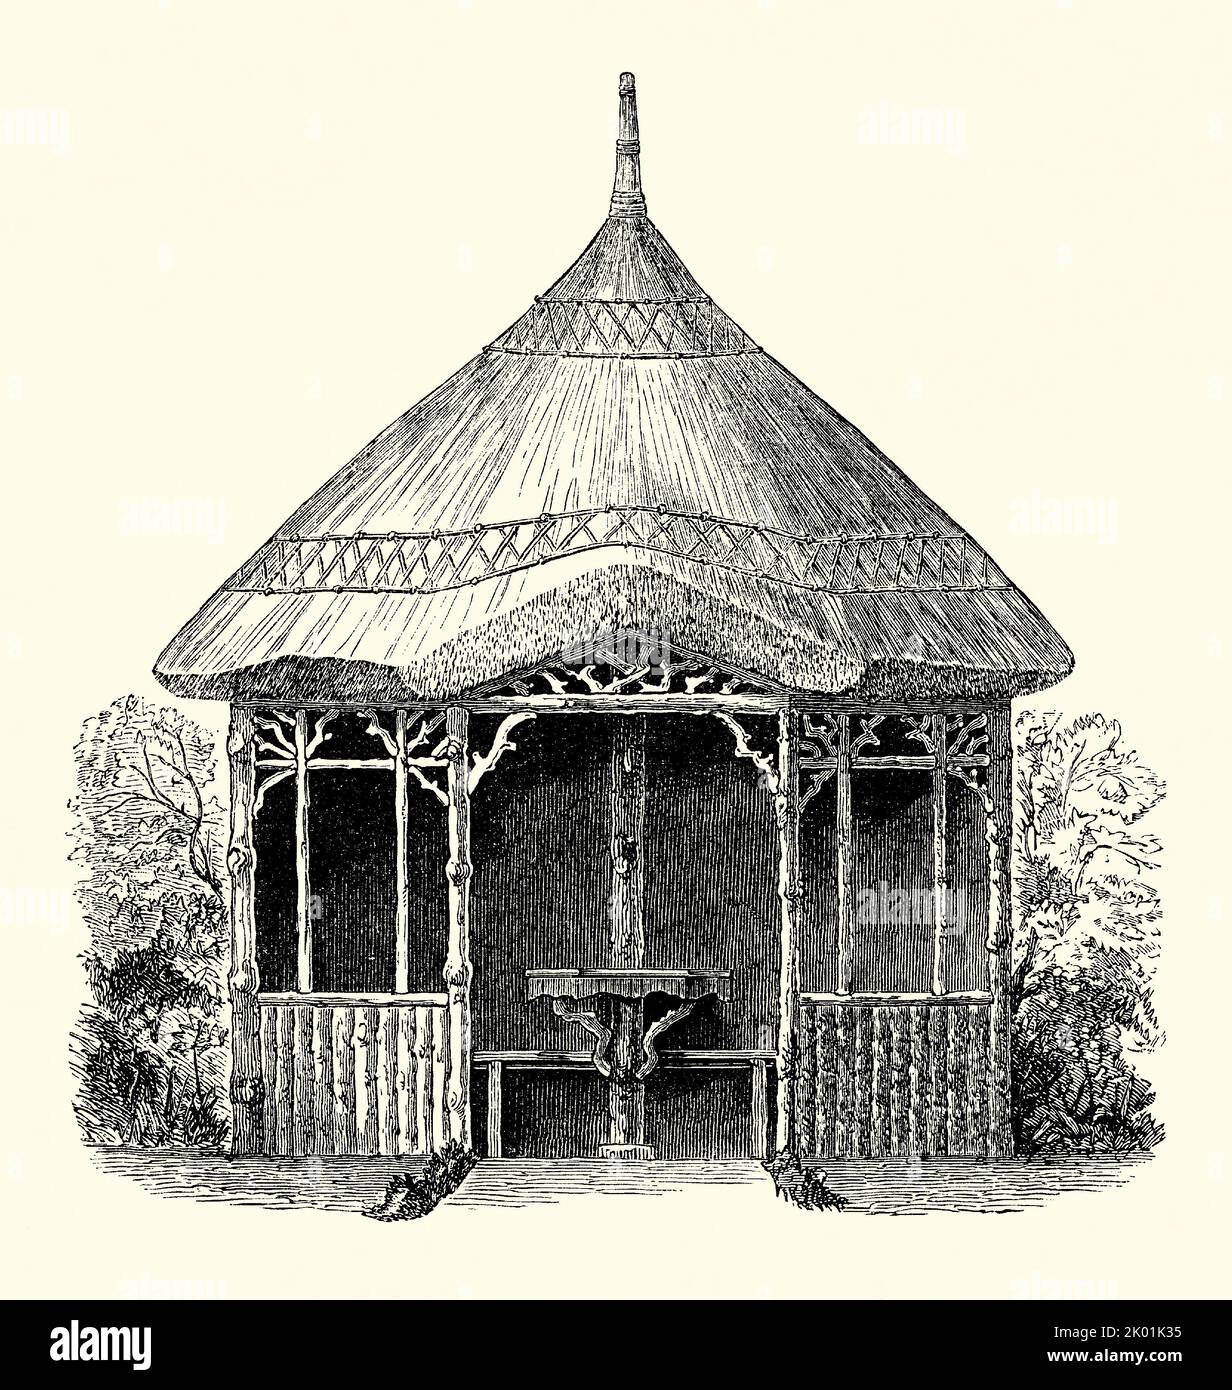 Eine alte viktorianische Gravur eines Entwurfs für ein rustikales, Holz, achteckigen Garten Sommerhaus mit einem Reetdach. Es stammt aus einem Buch von 1890. Der Unterstand verfügt auch über Sitzgelegenheiten und einen Tisch, der an der zentralen Säule befestigt ist. Stockfoto